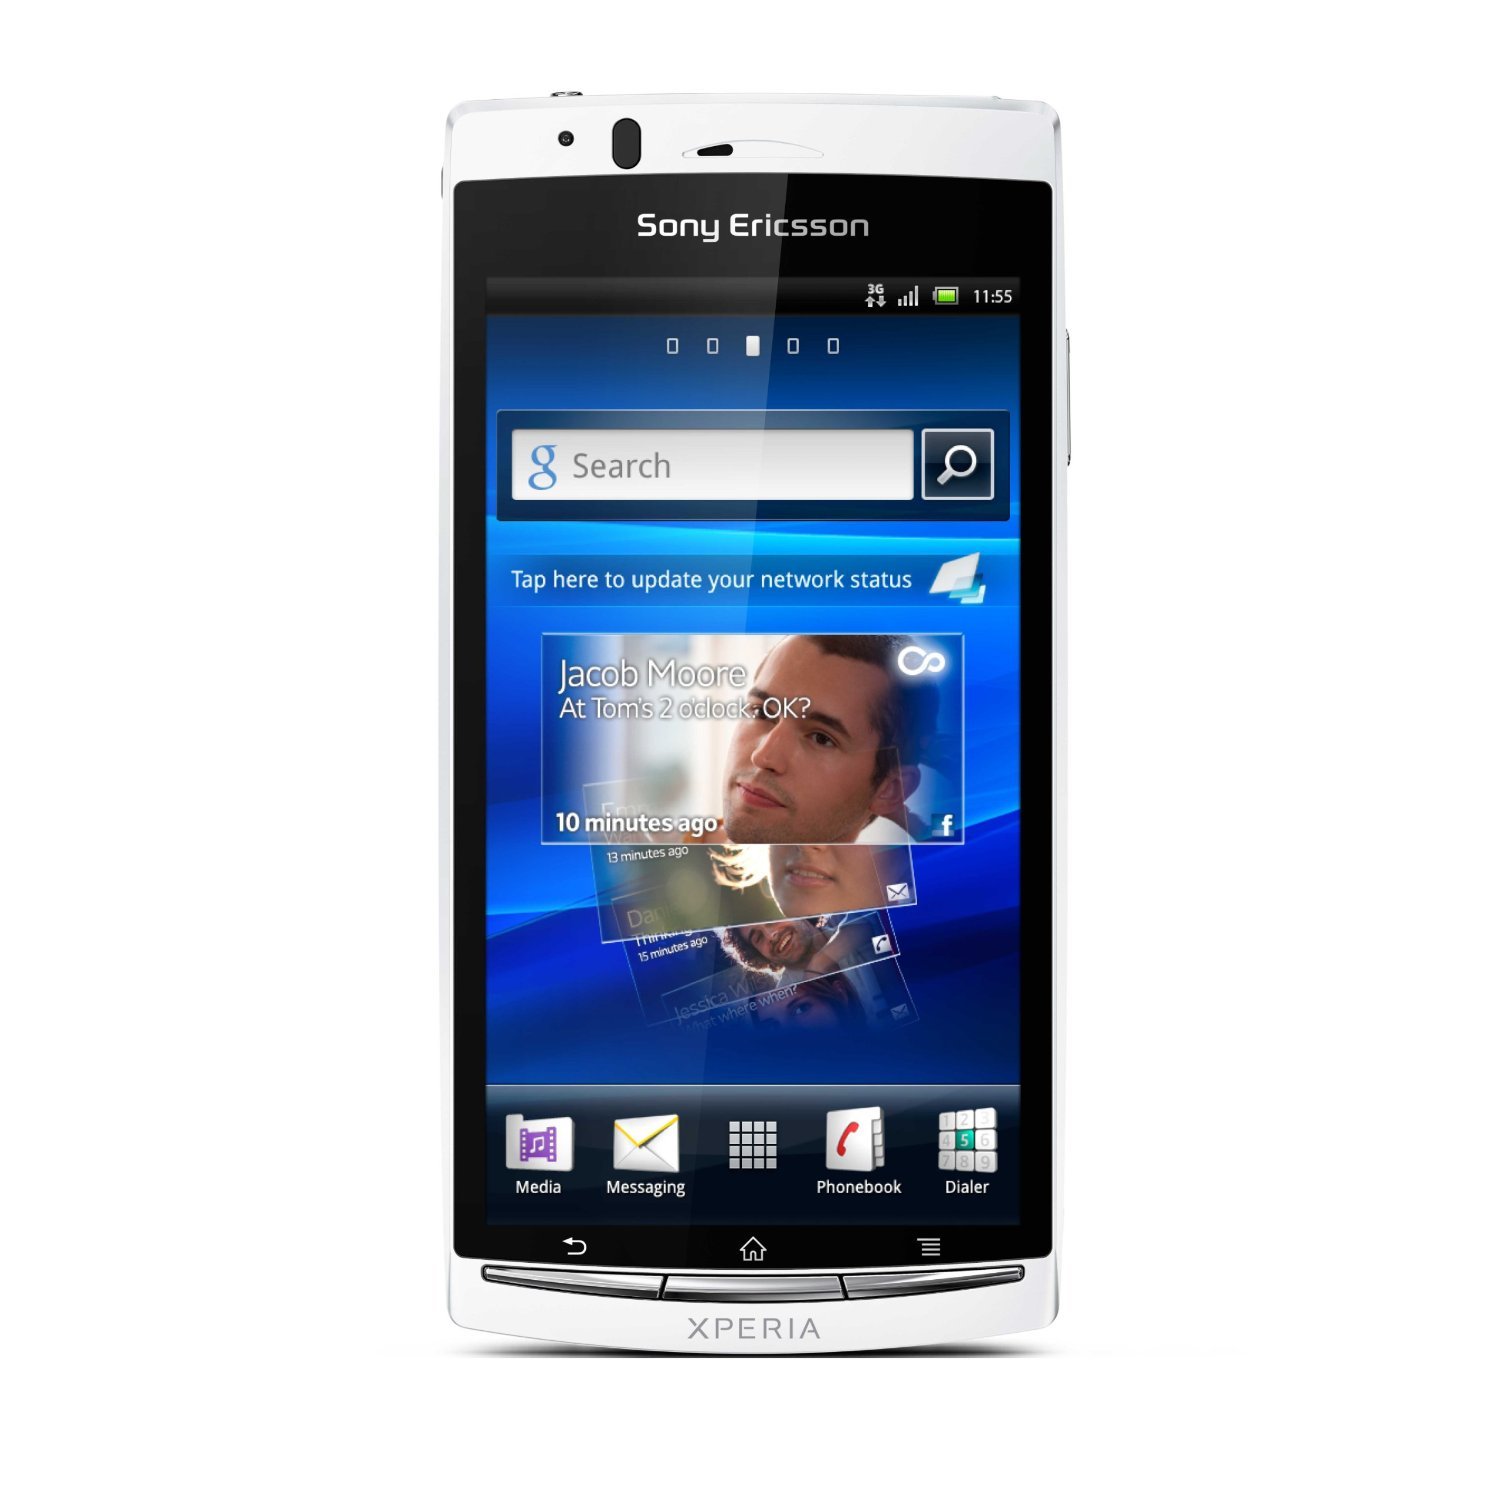 Schrijf op Zeeman openbaar Sony Ericsson Xperia Arc S specs, review, release date - PhonesData